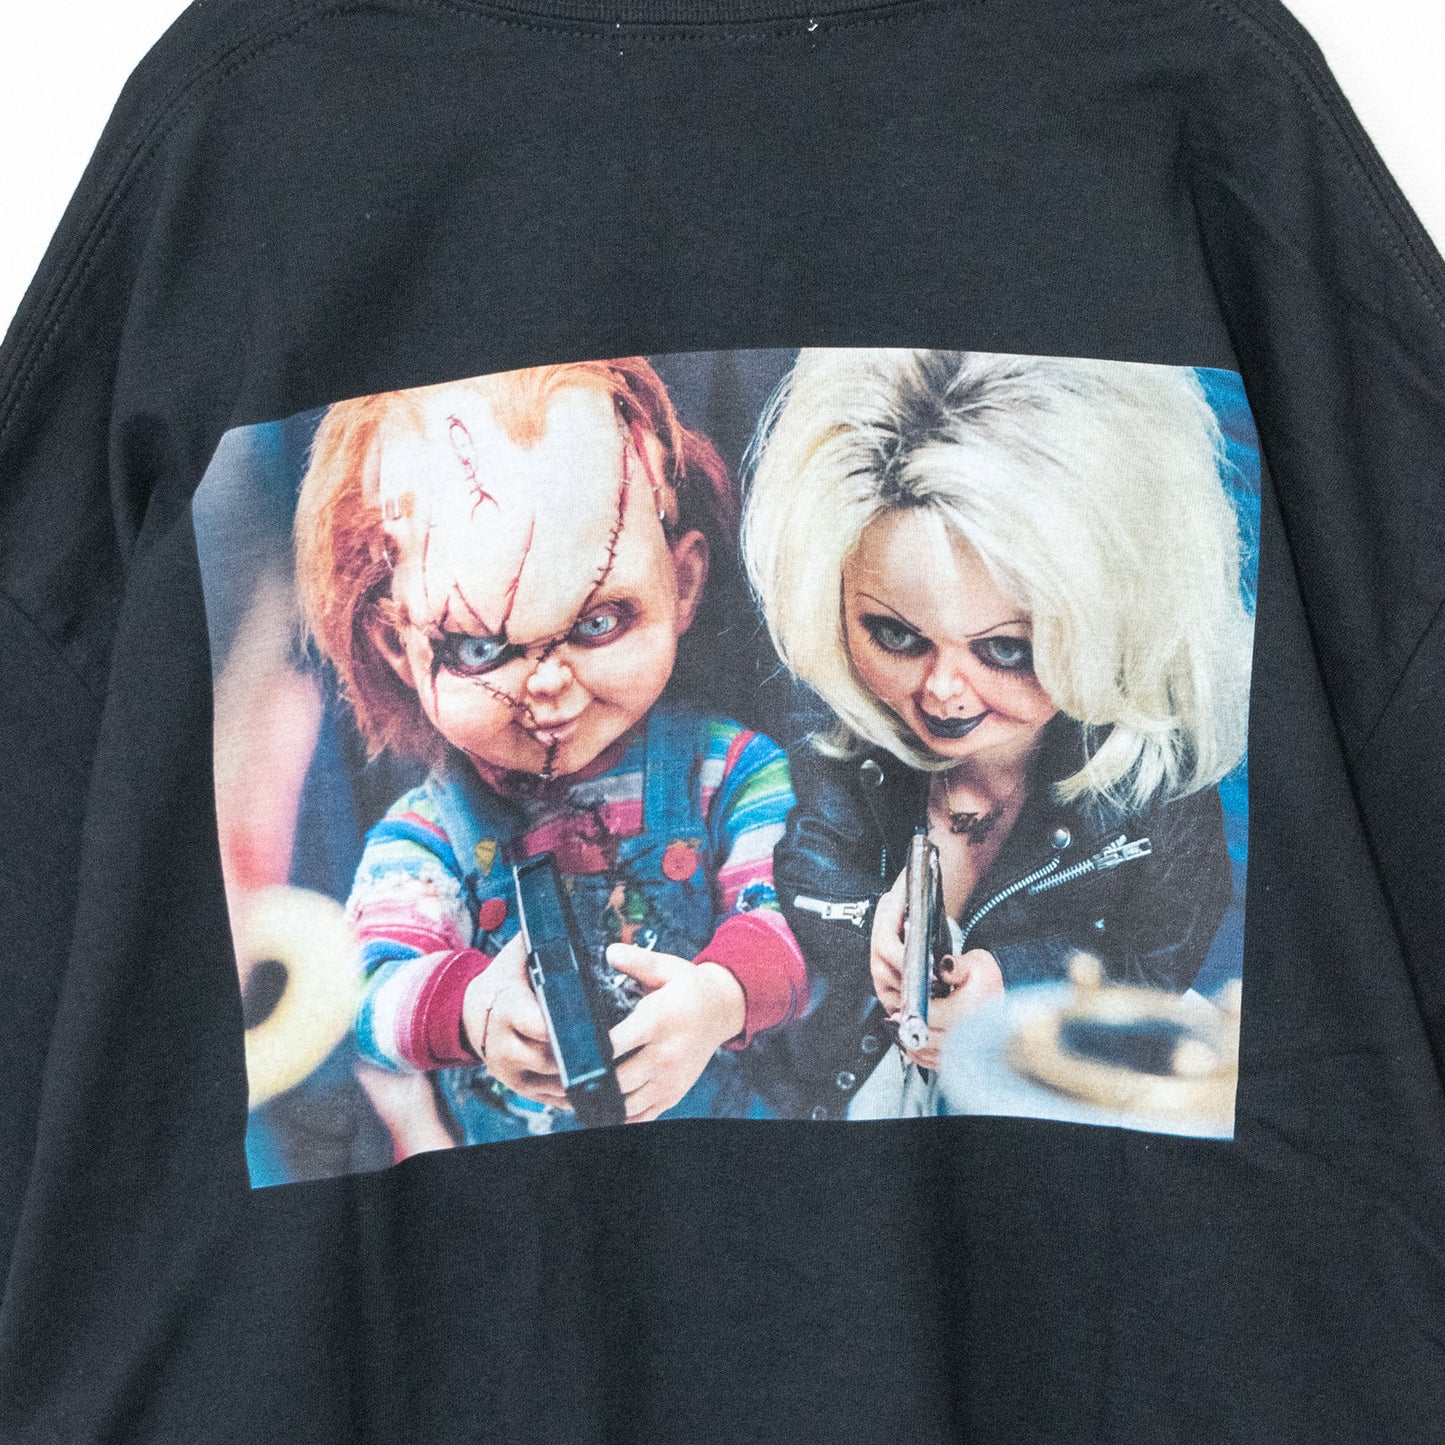 Chucky Photo Print T-shirt